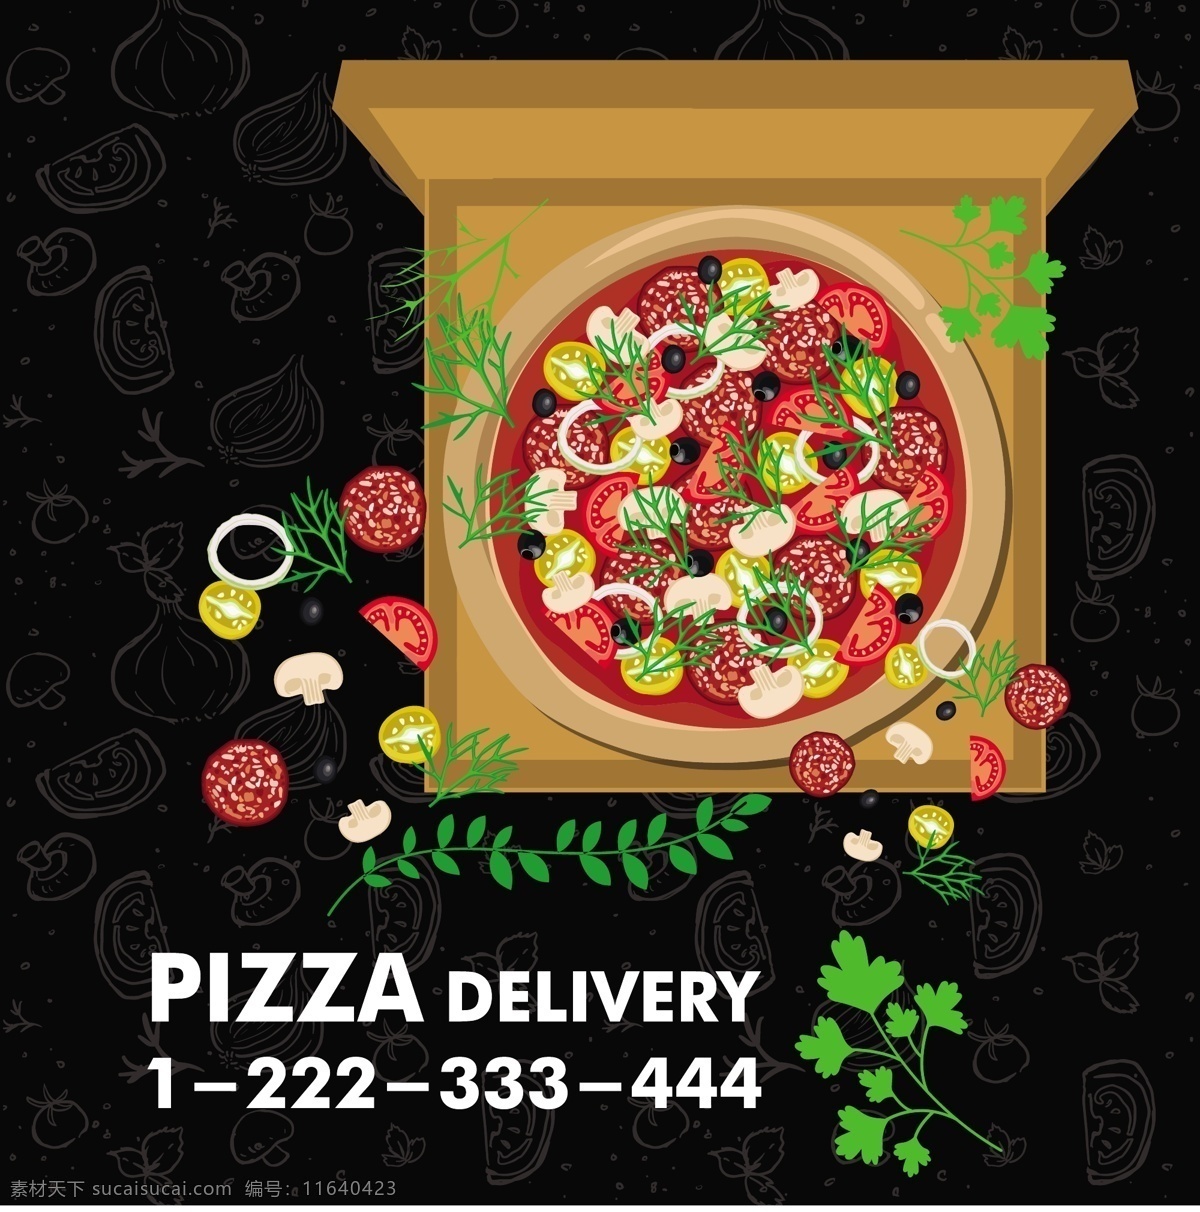 矢量披萨图案 披萨 矢量披萨 食物 矢量食物 快餐海报 快餐 手绘食物